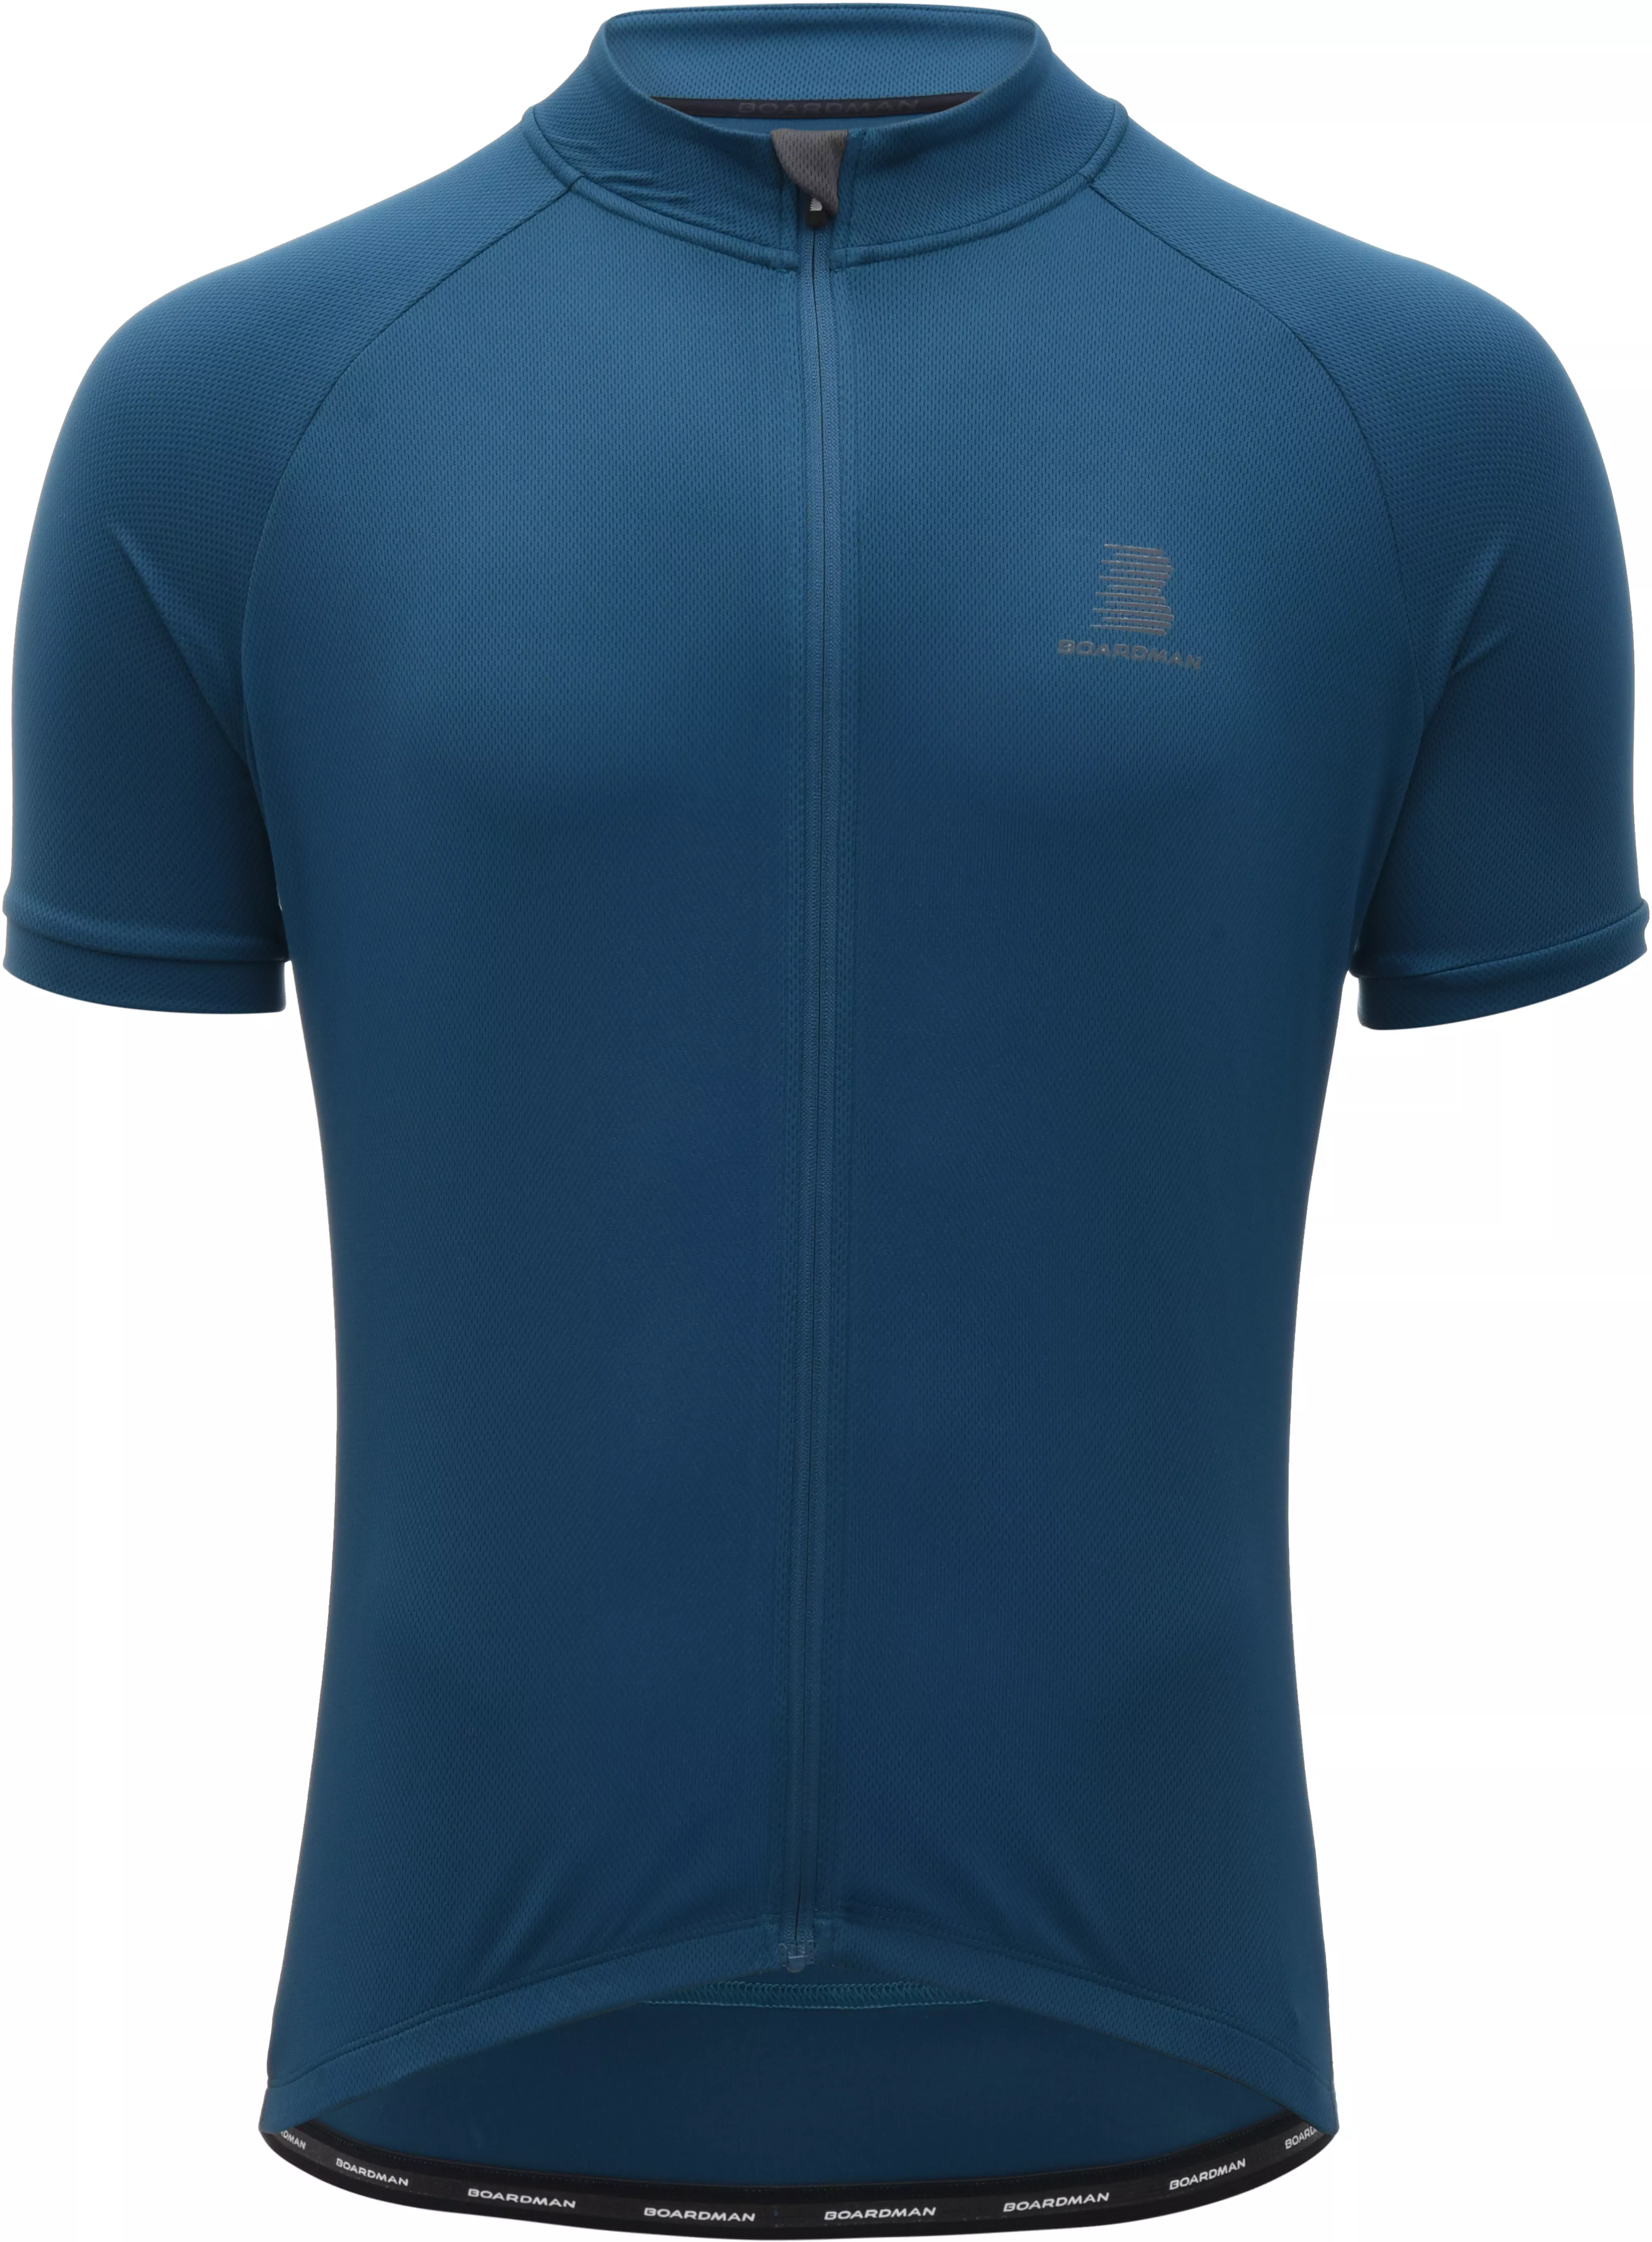 Boardman Mens Cycling Jersey - Blue 